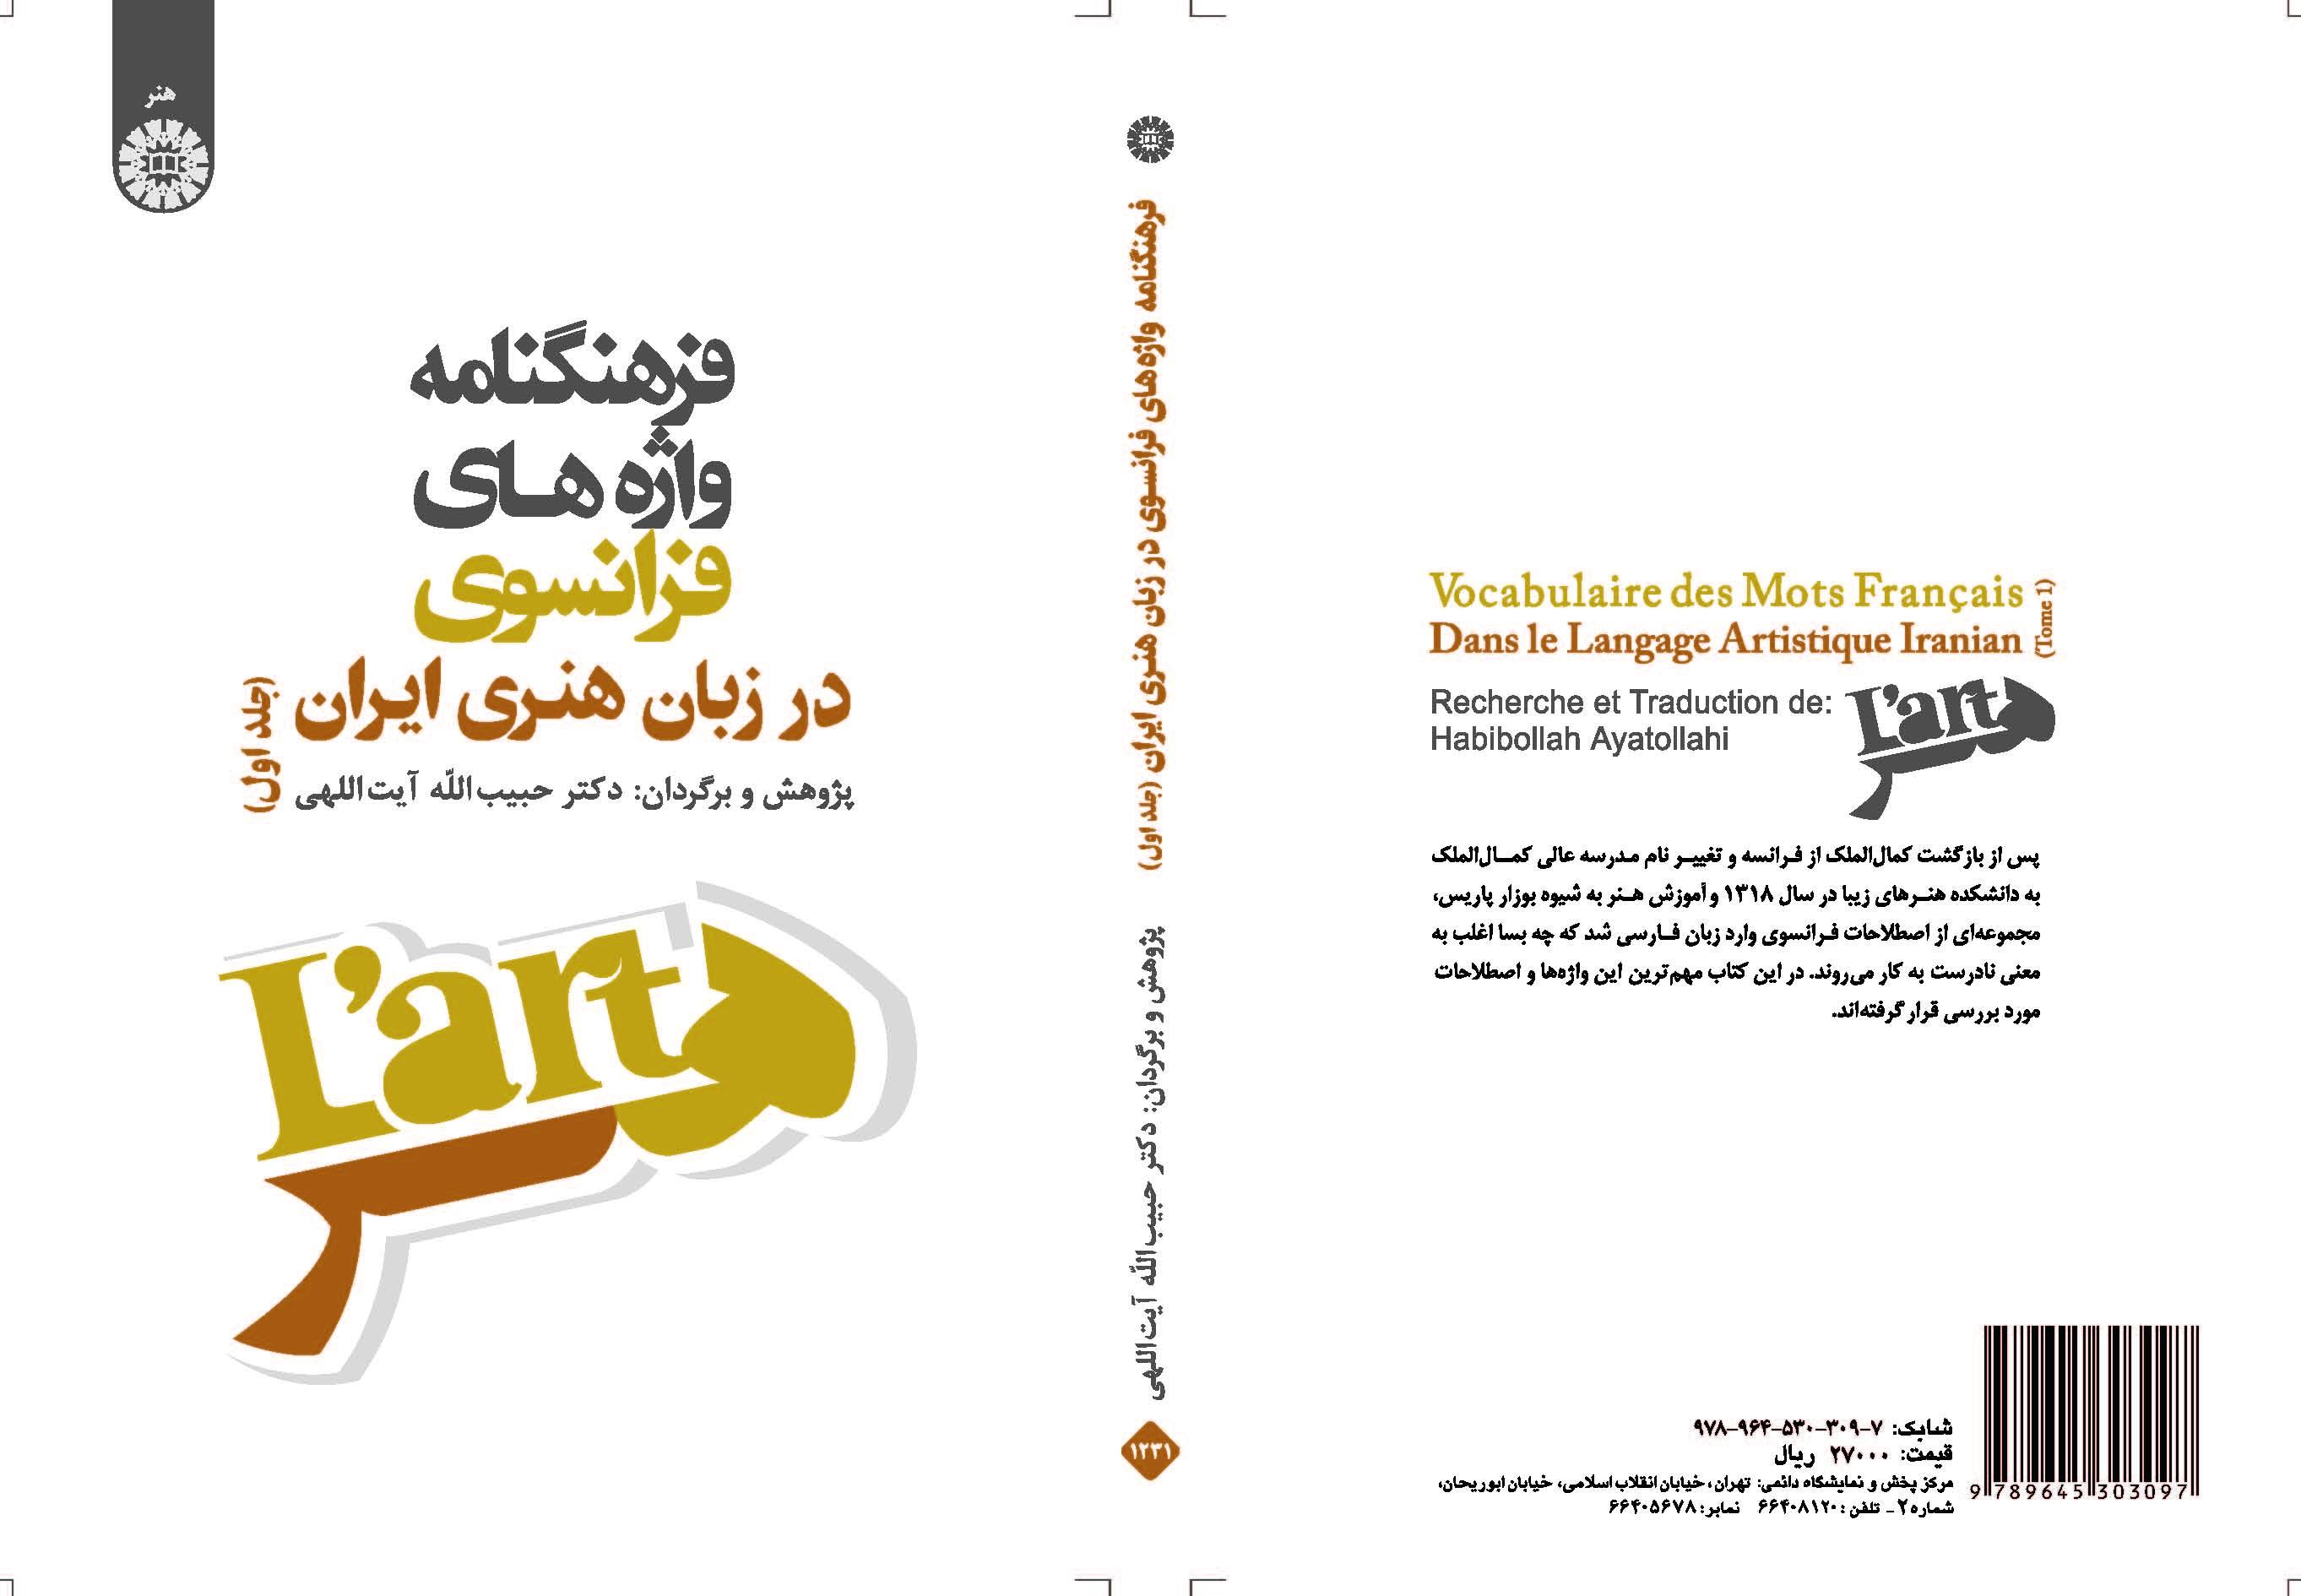 قاموس الكلمات الفرنسية في اللغة الفنية في إيران (المجلد الأول)